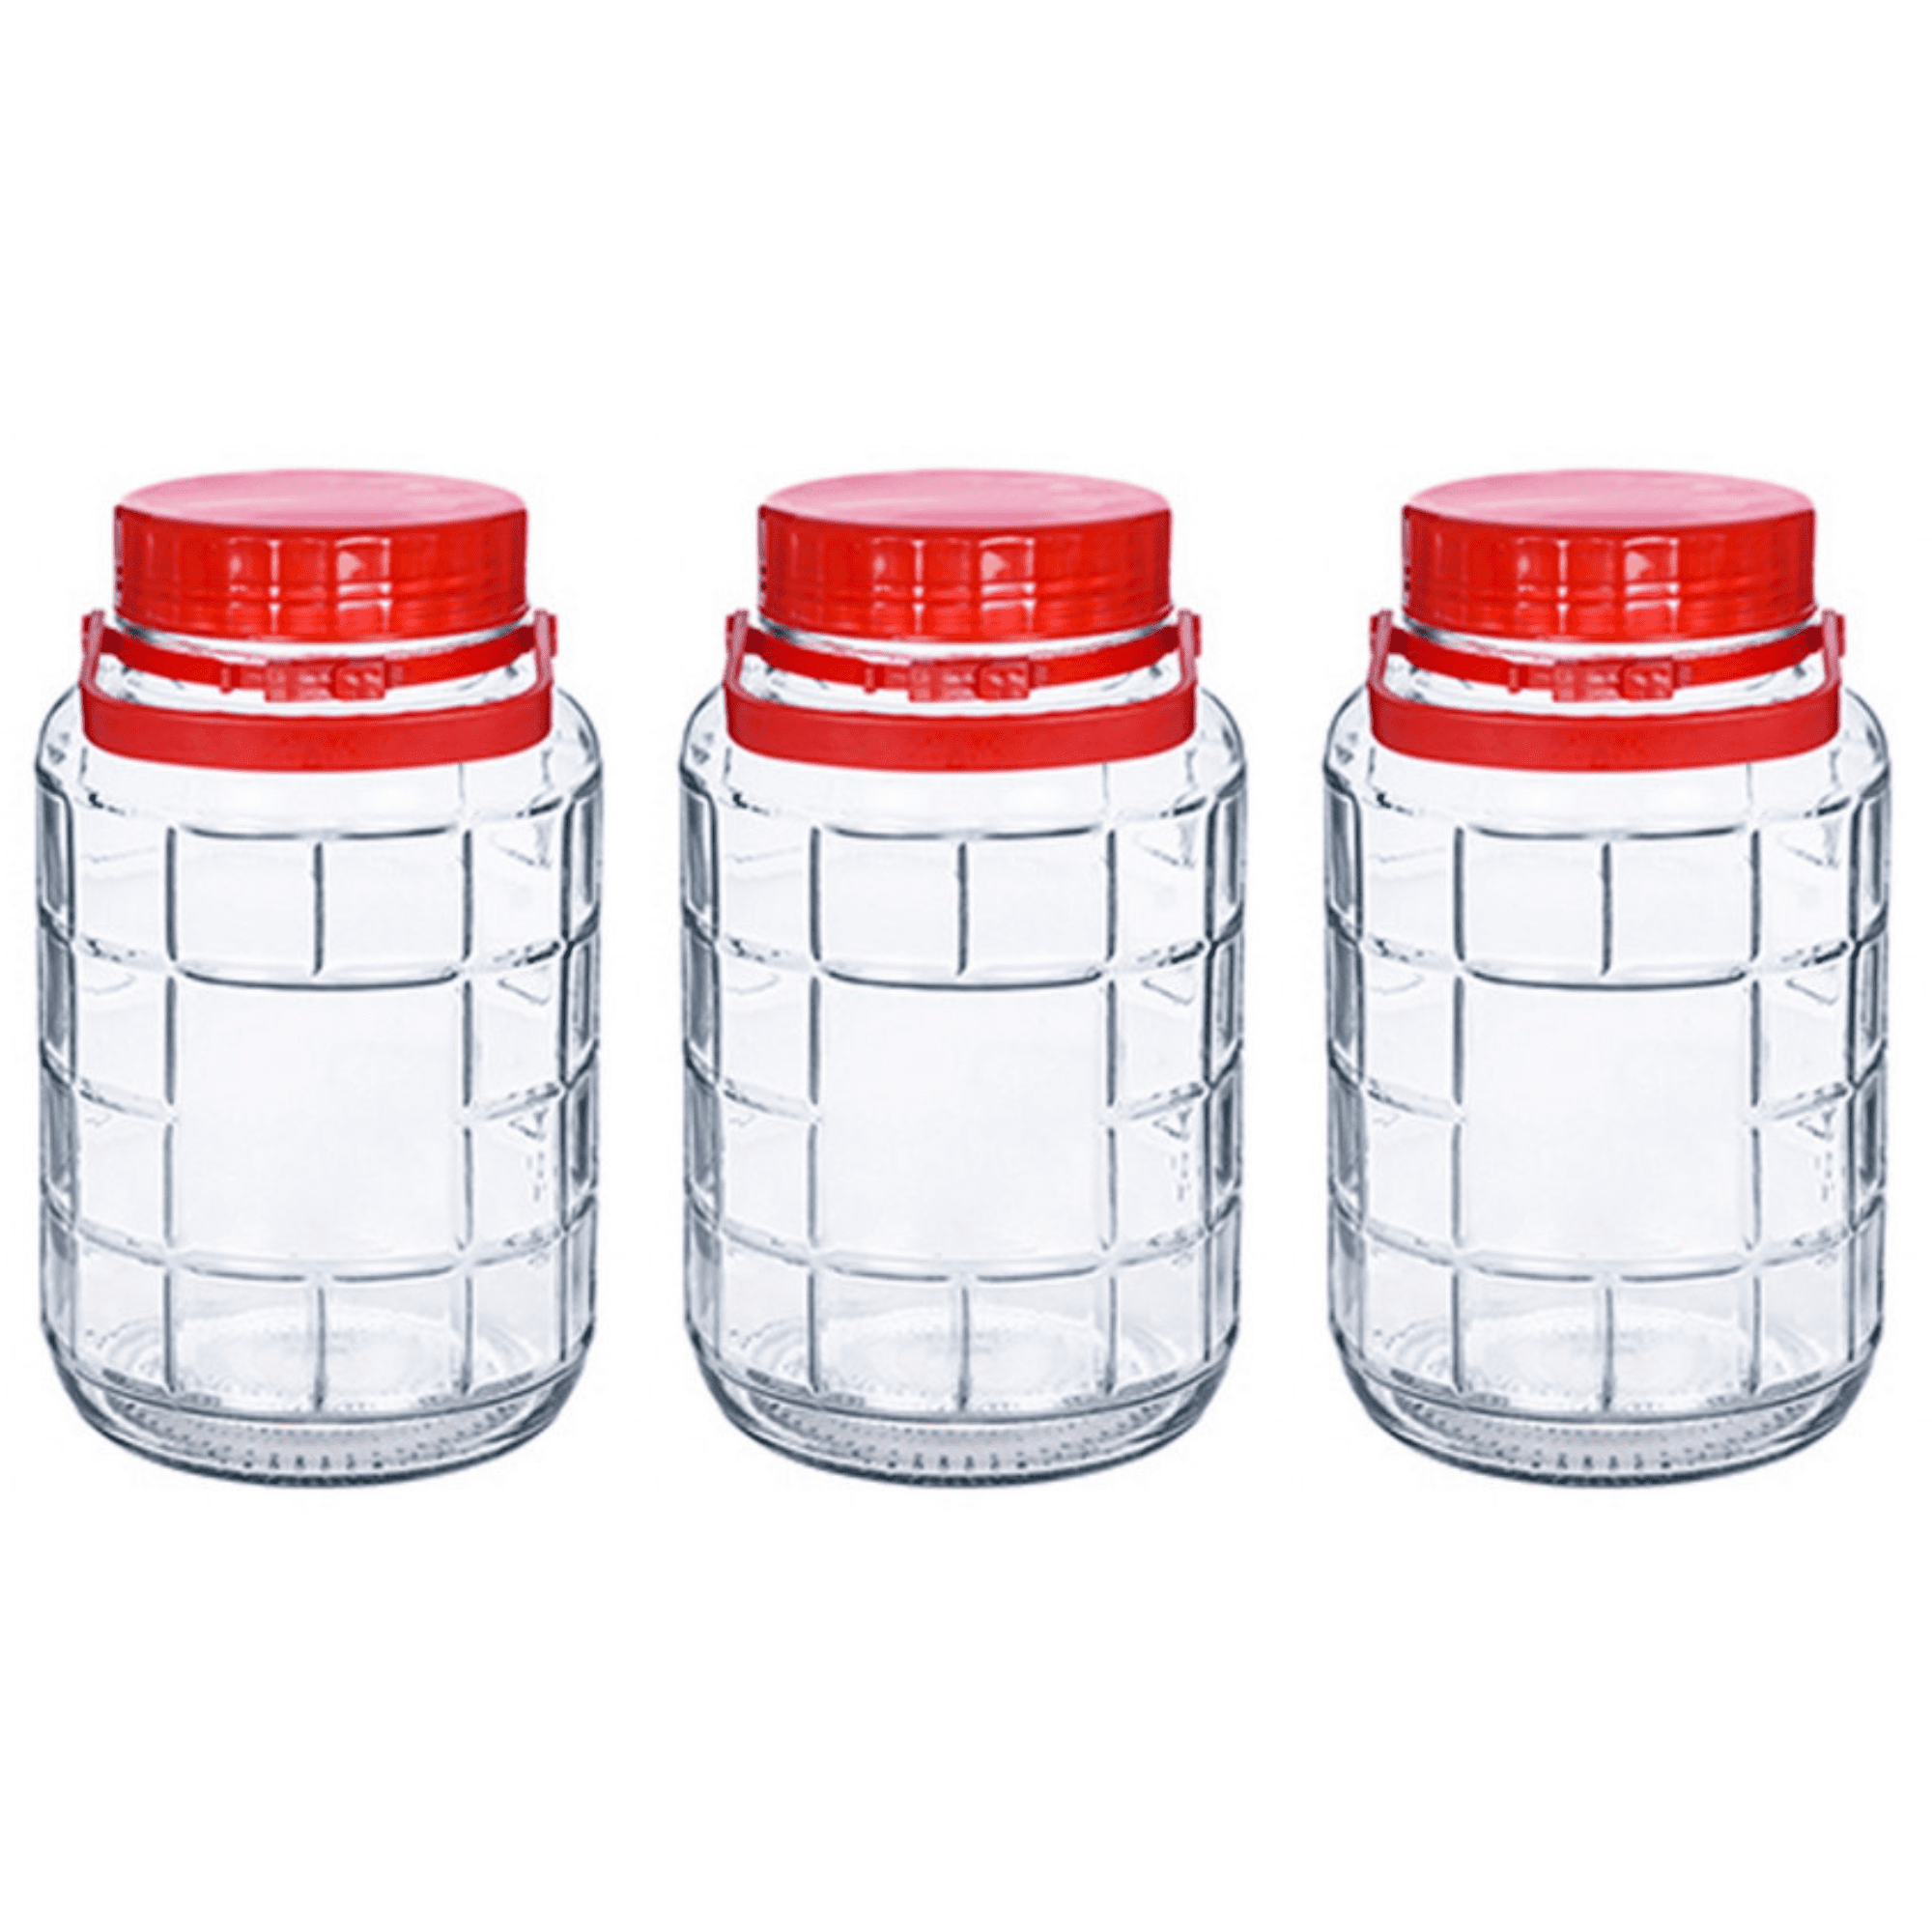 3 Botes de Cristal de 4 litros con tapa de plástico